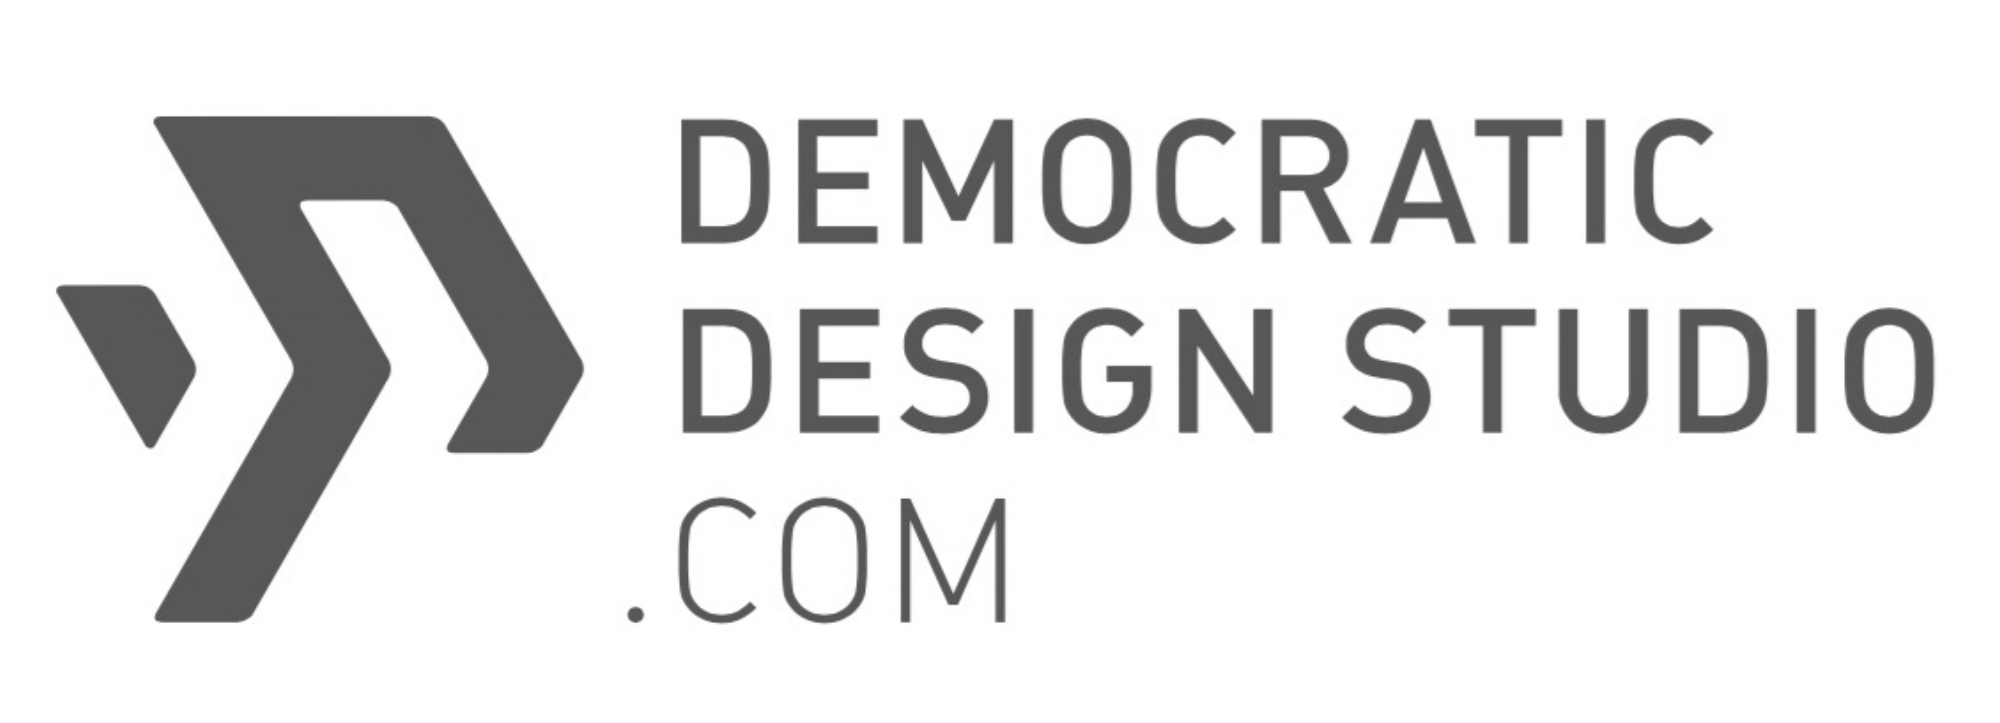 DEMOCRATIC DESIGN STUDIO